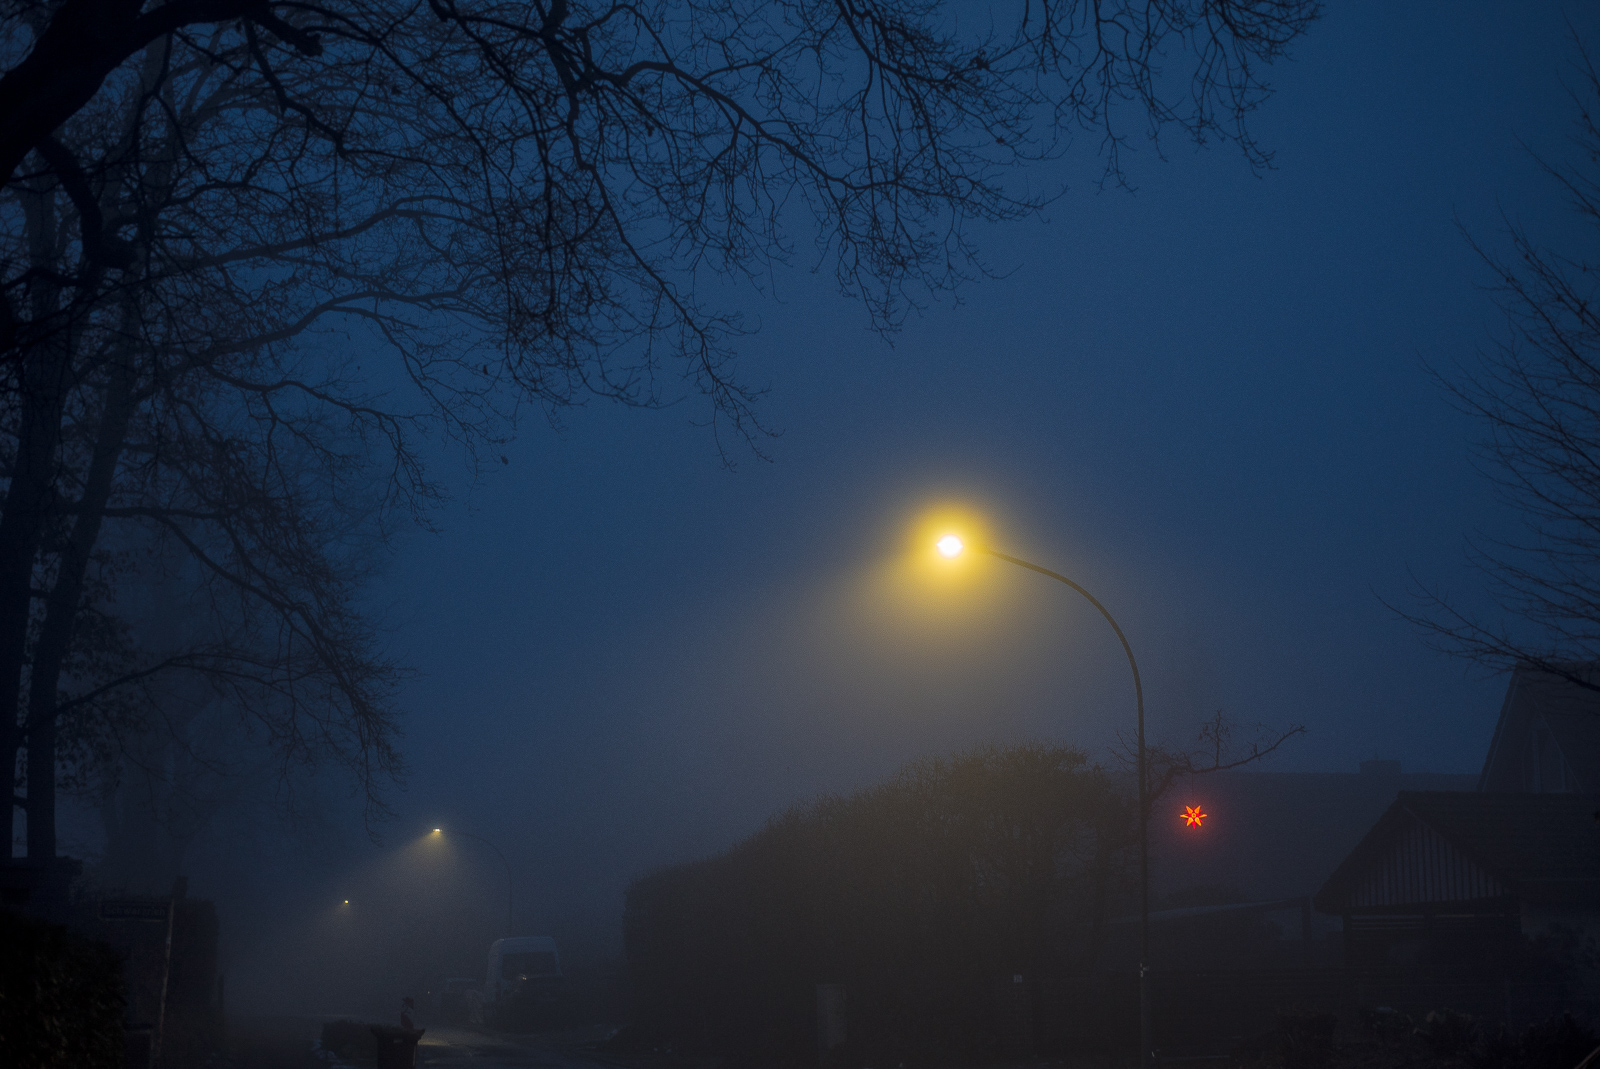 Abendlicher Nebel in blauem Dämmerlicht: Straßenlaternen und ein rot leuchtender Stern